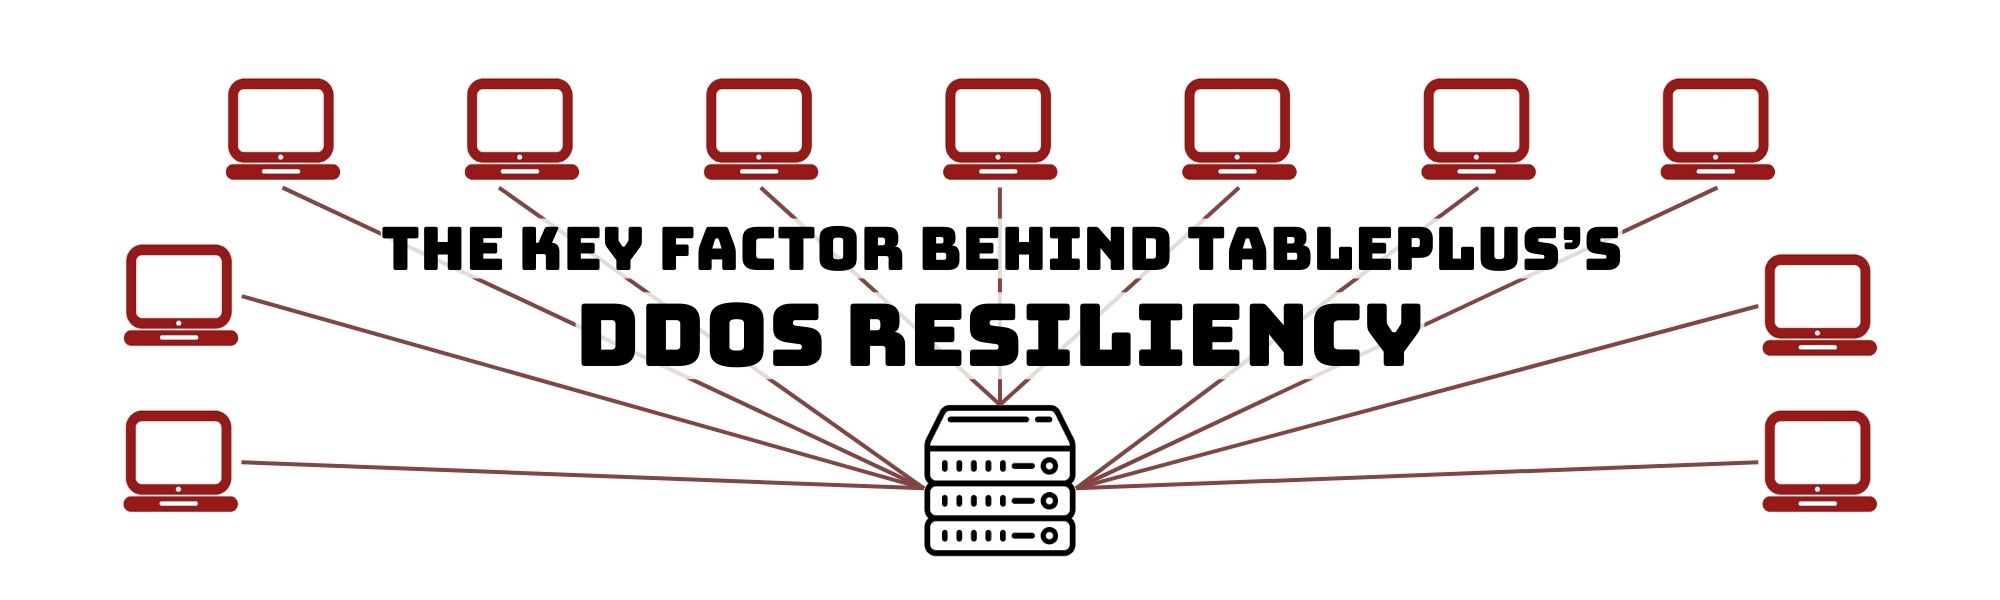 /key-factor-behind-tableplus-ddos-resiliency/cover-image.jpg